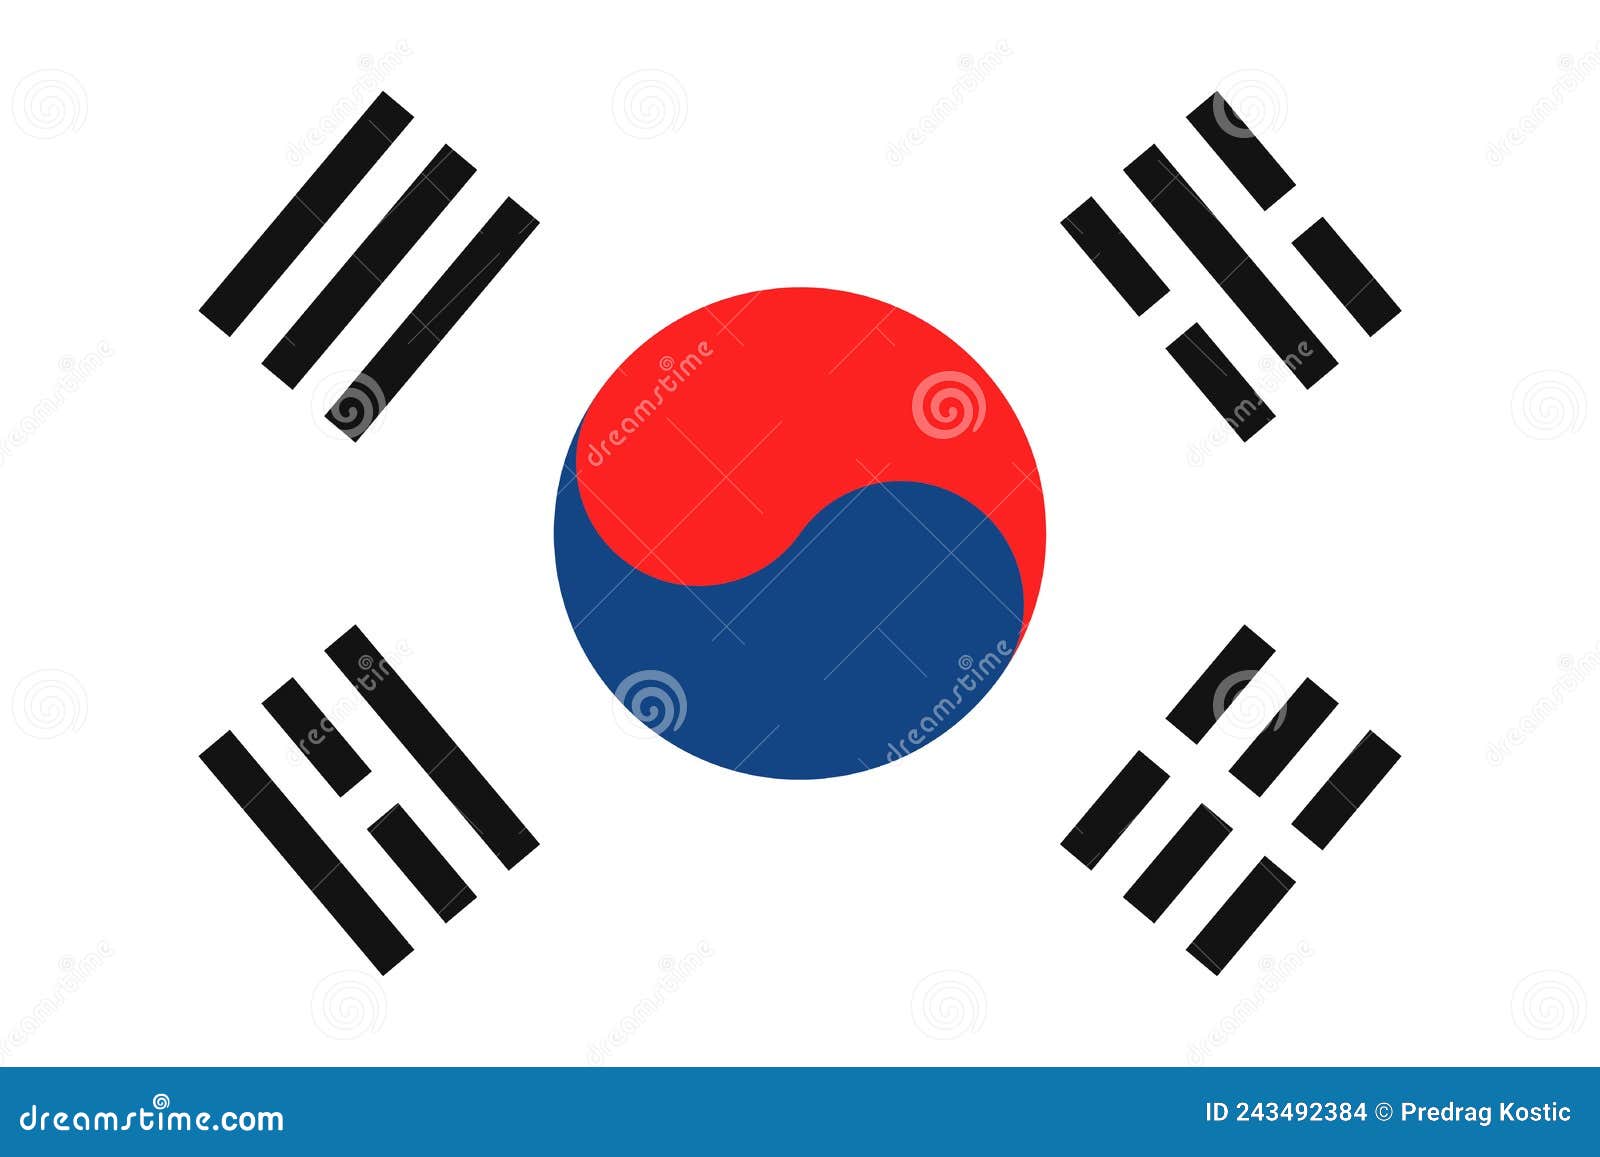 south corea flag